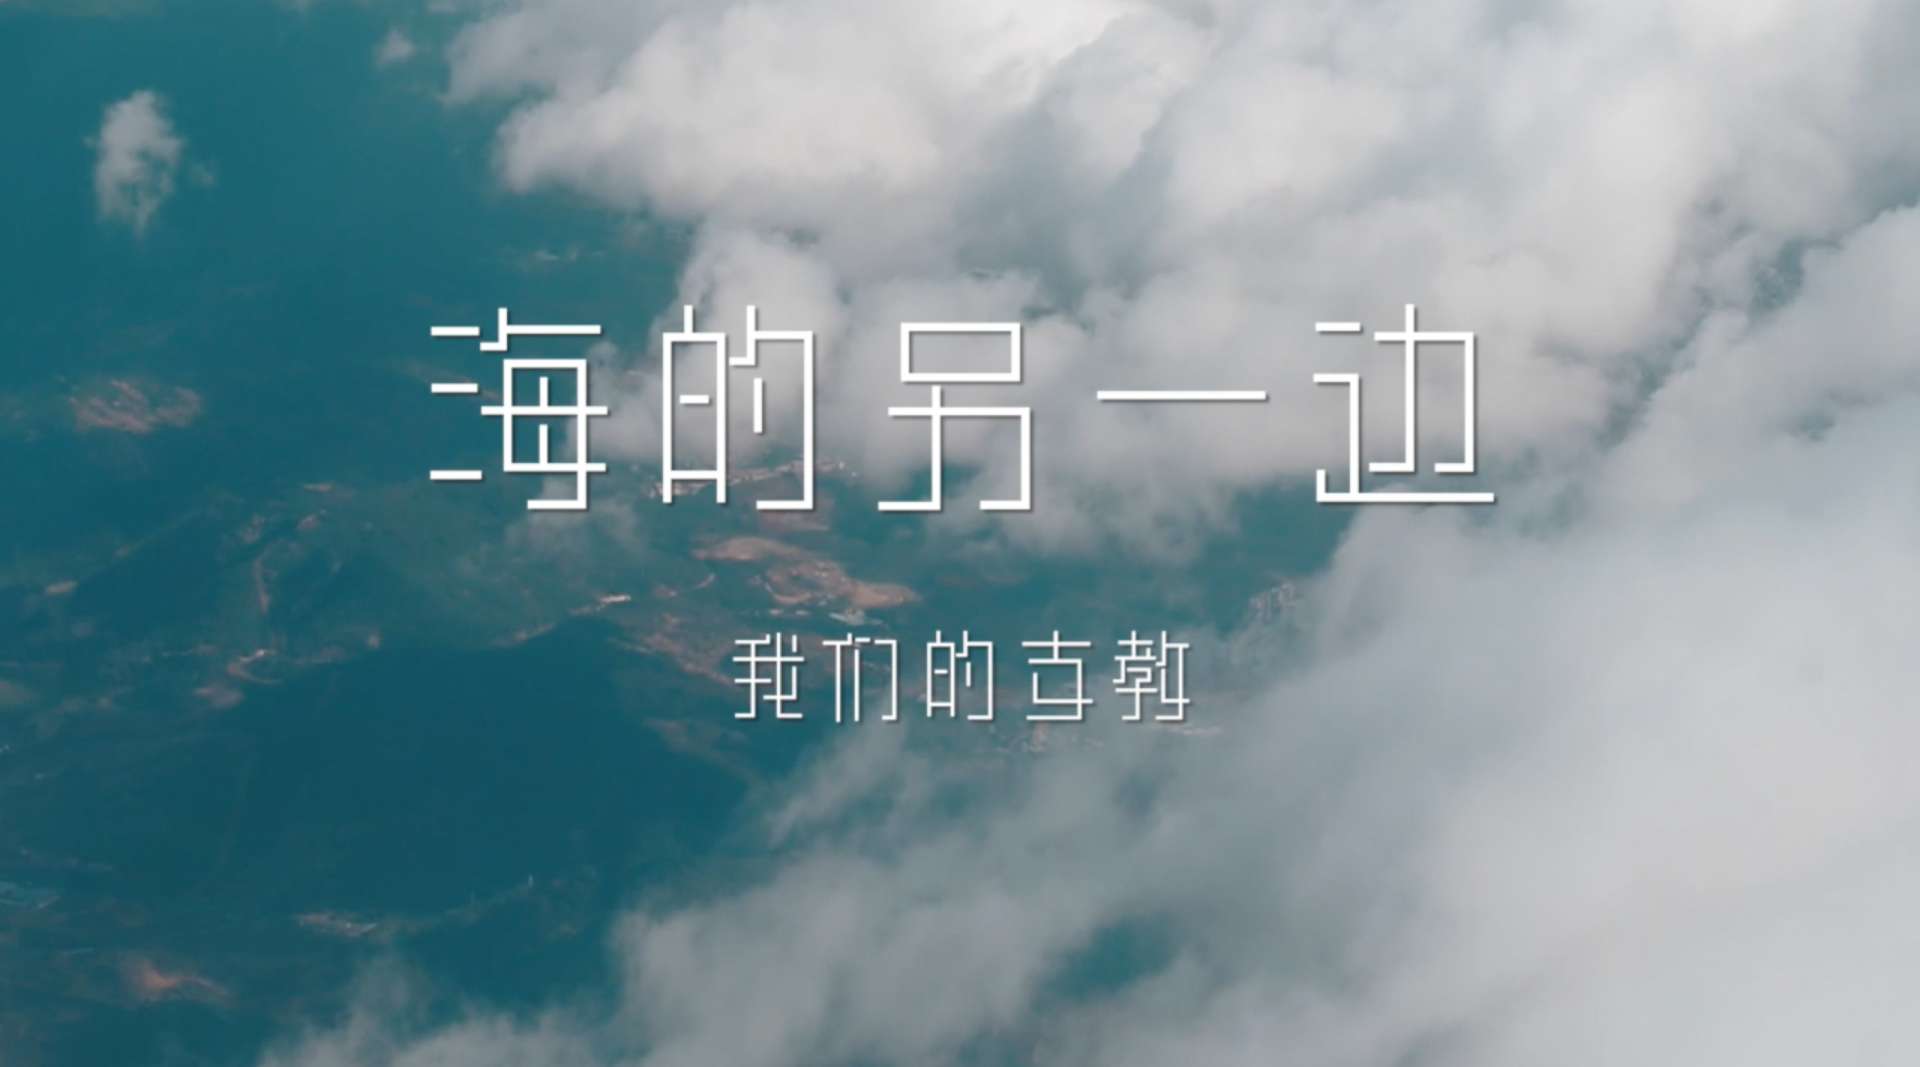 上海交通大学觅源青志队云南洱源支教纪录片《海的另一边：我们的支教》